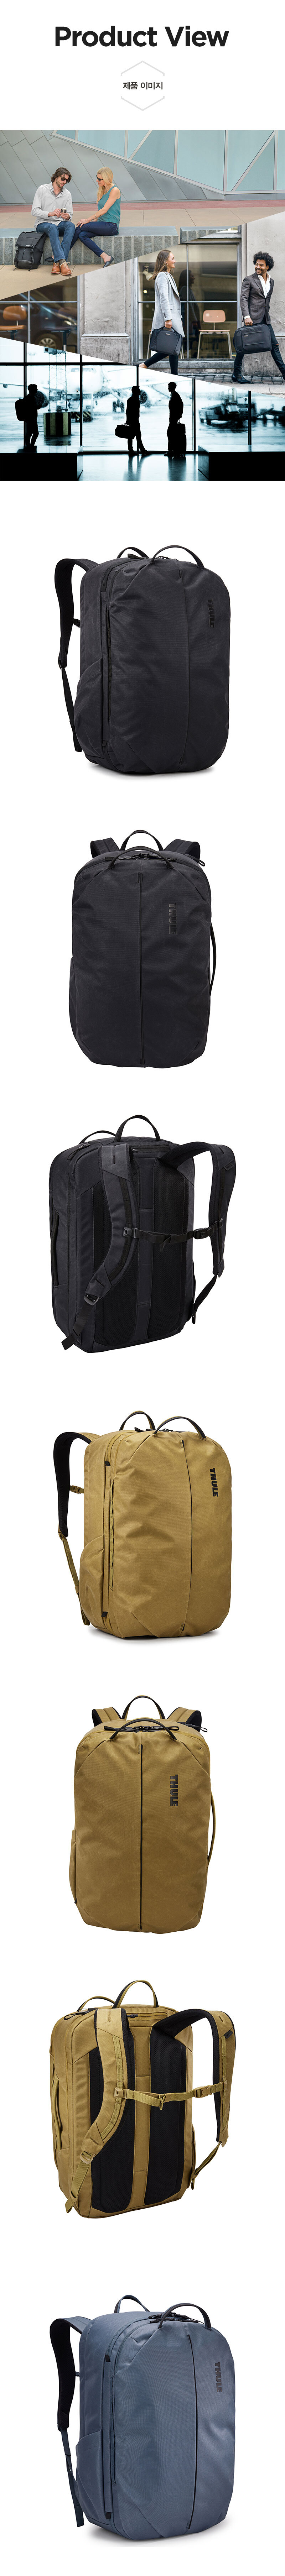 Aion-Backpack-40-3.jpg